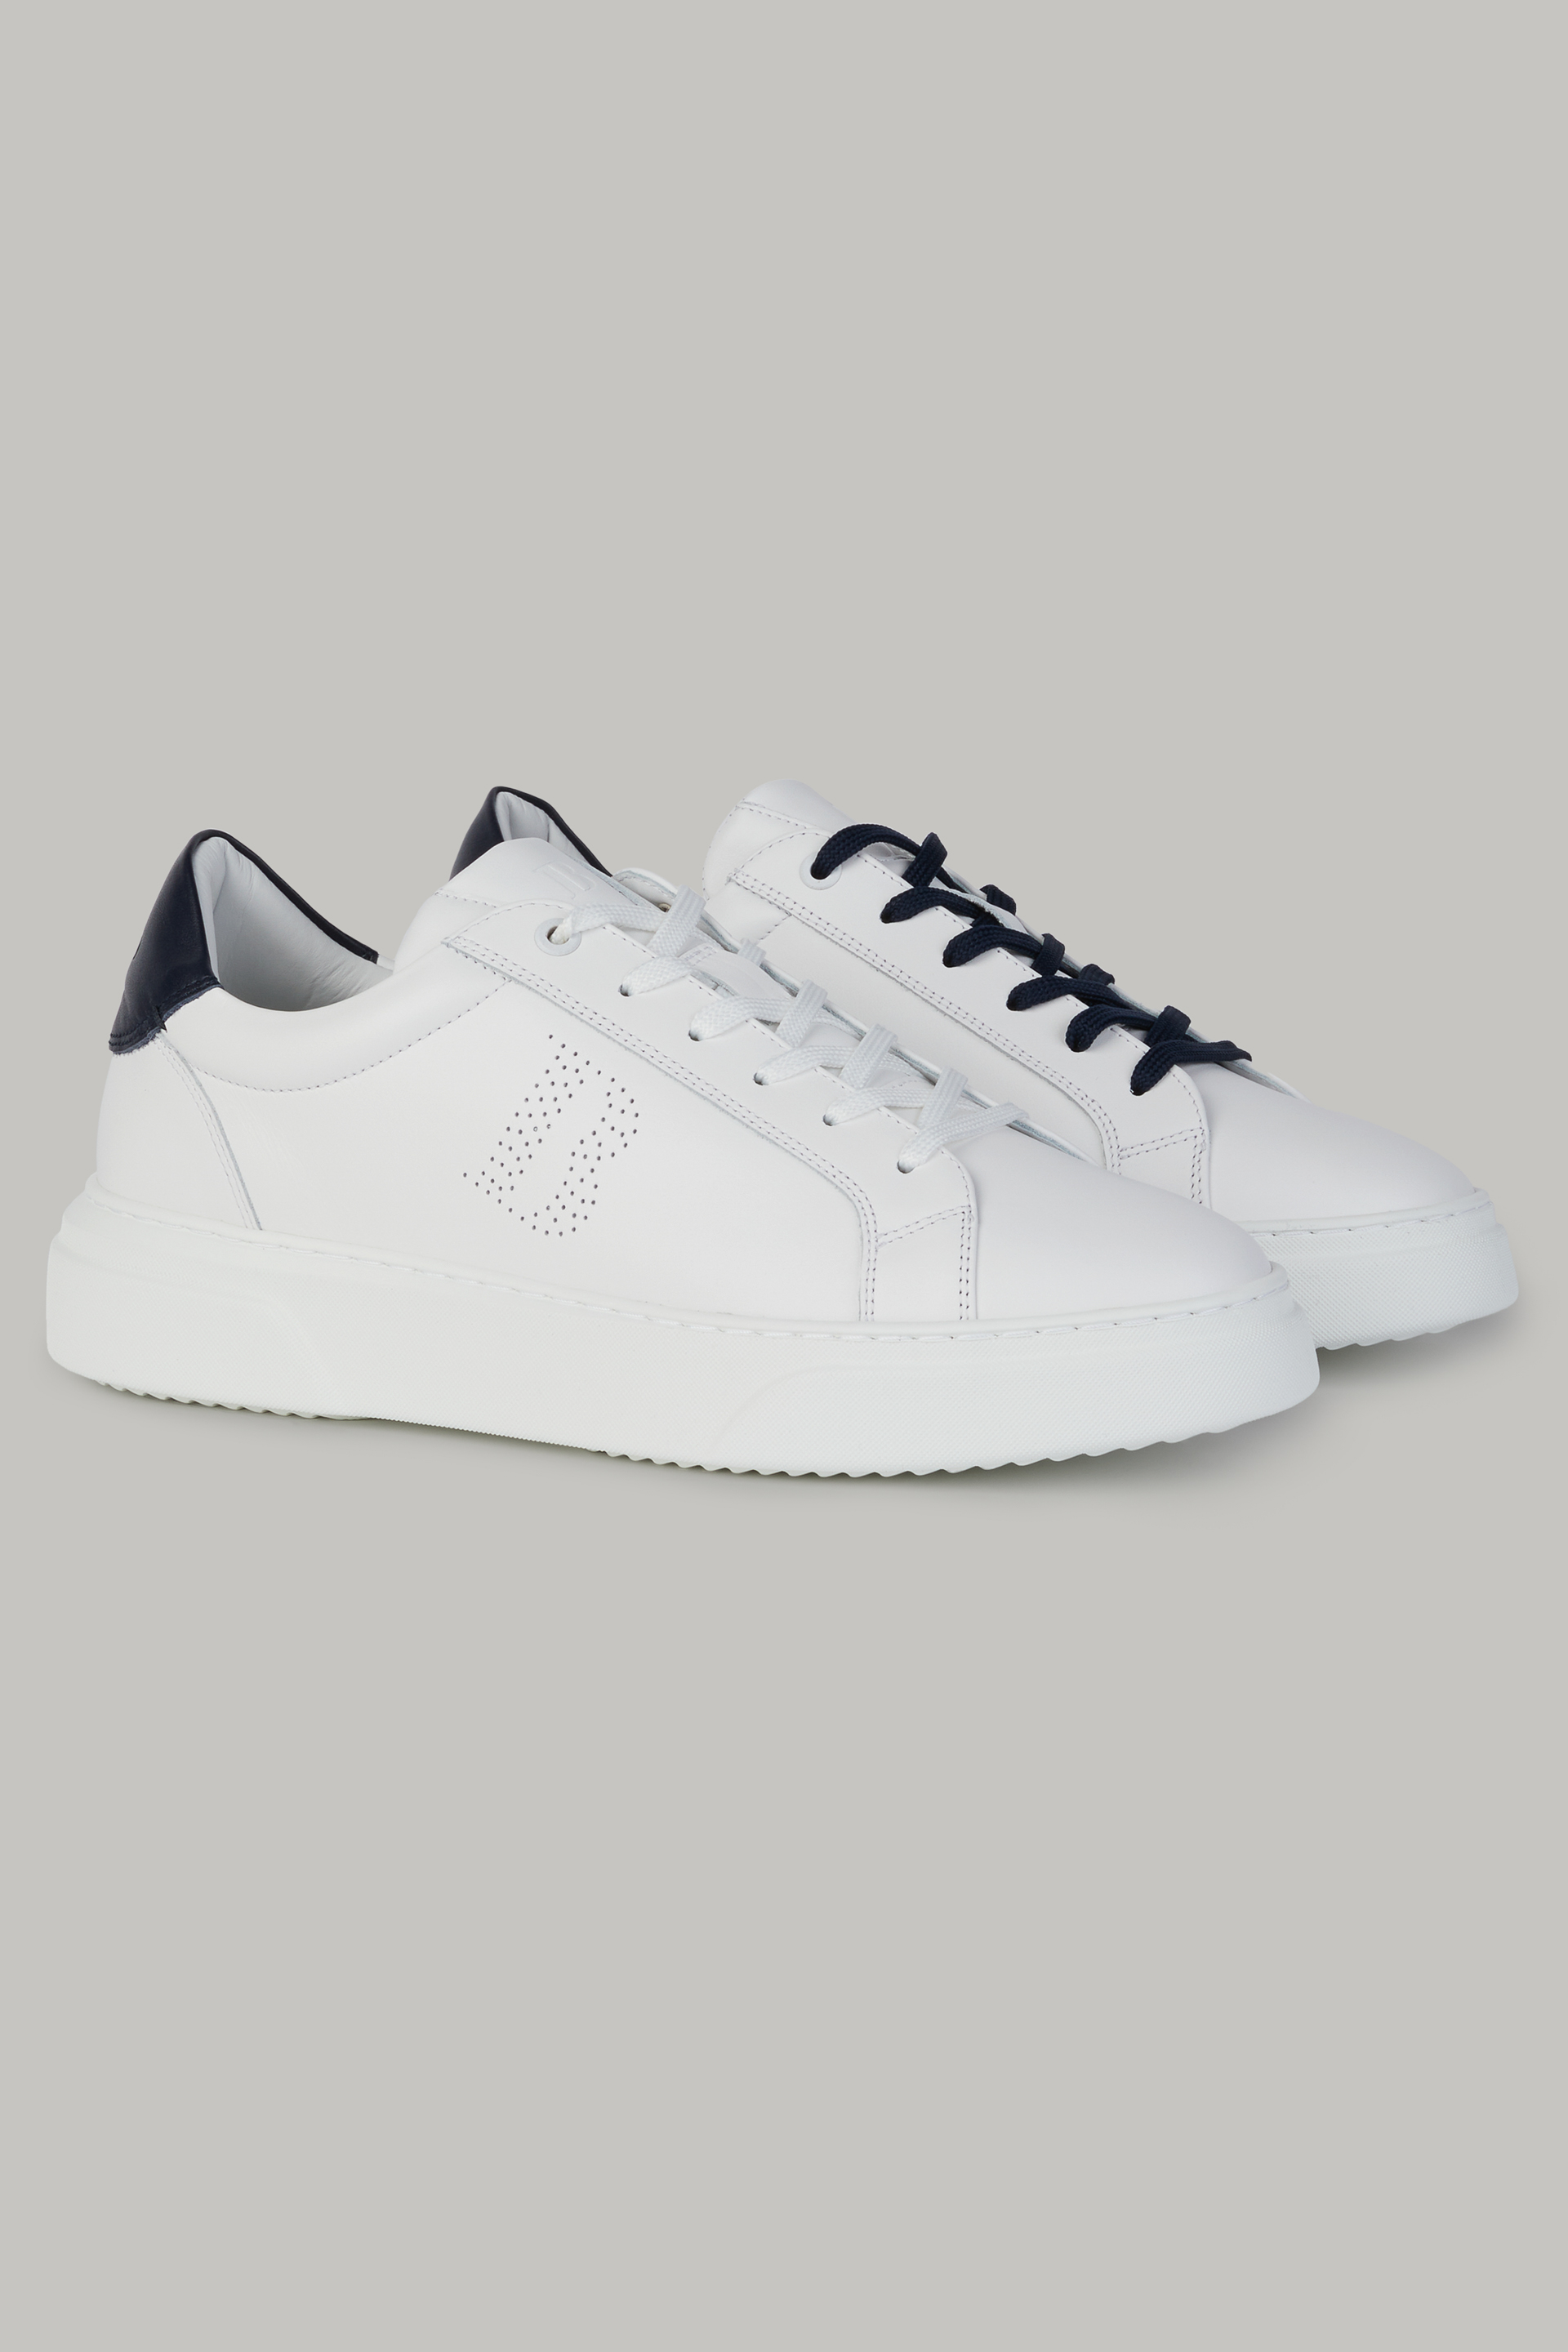 Accessoire chaussures sneaker cuir logo f blanc - Peinturier